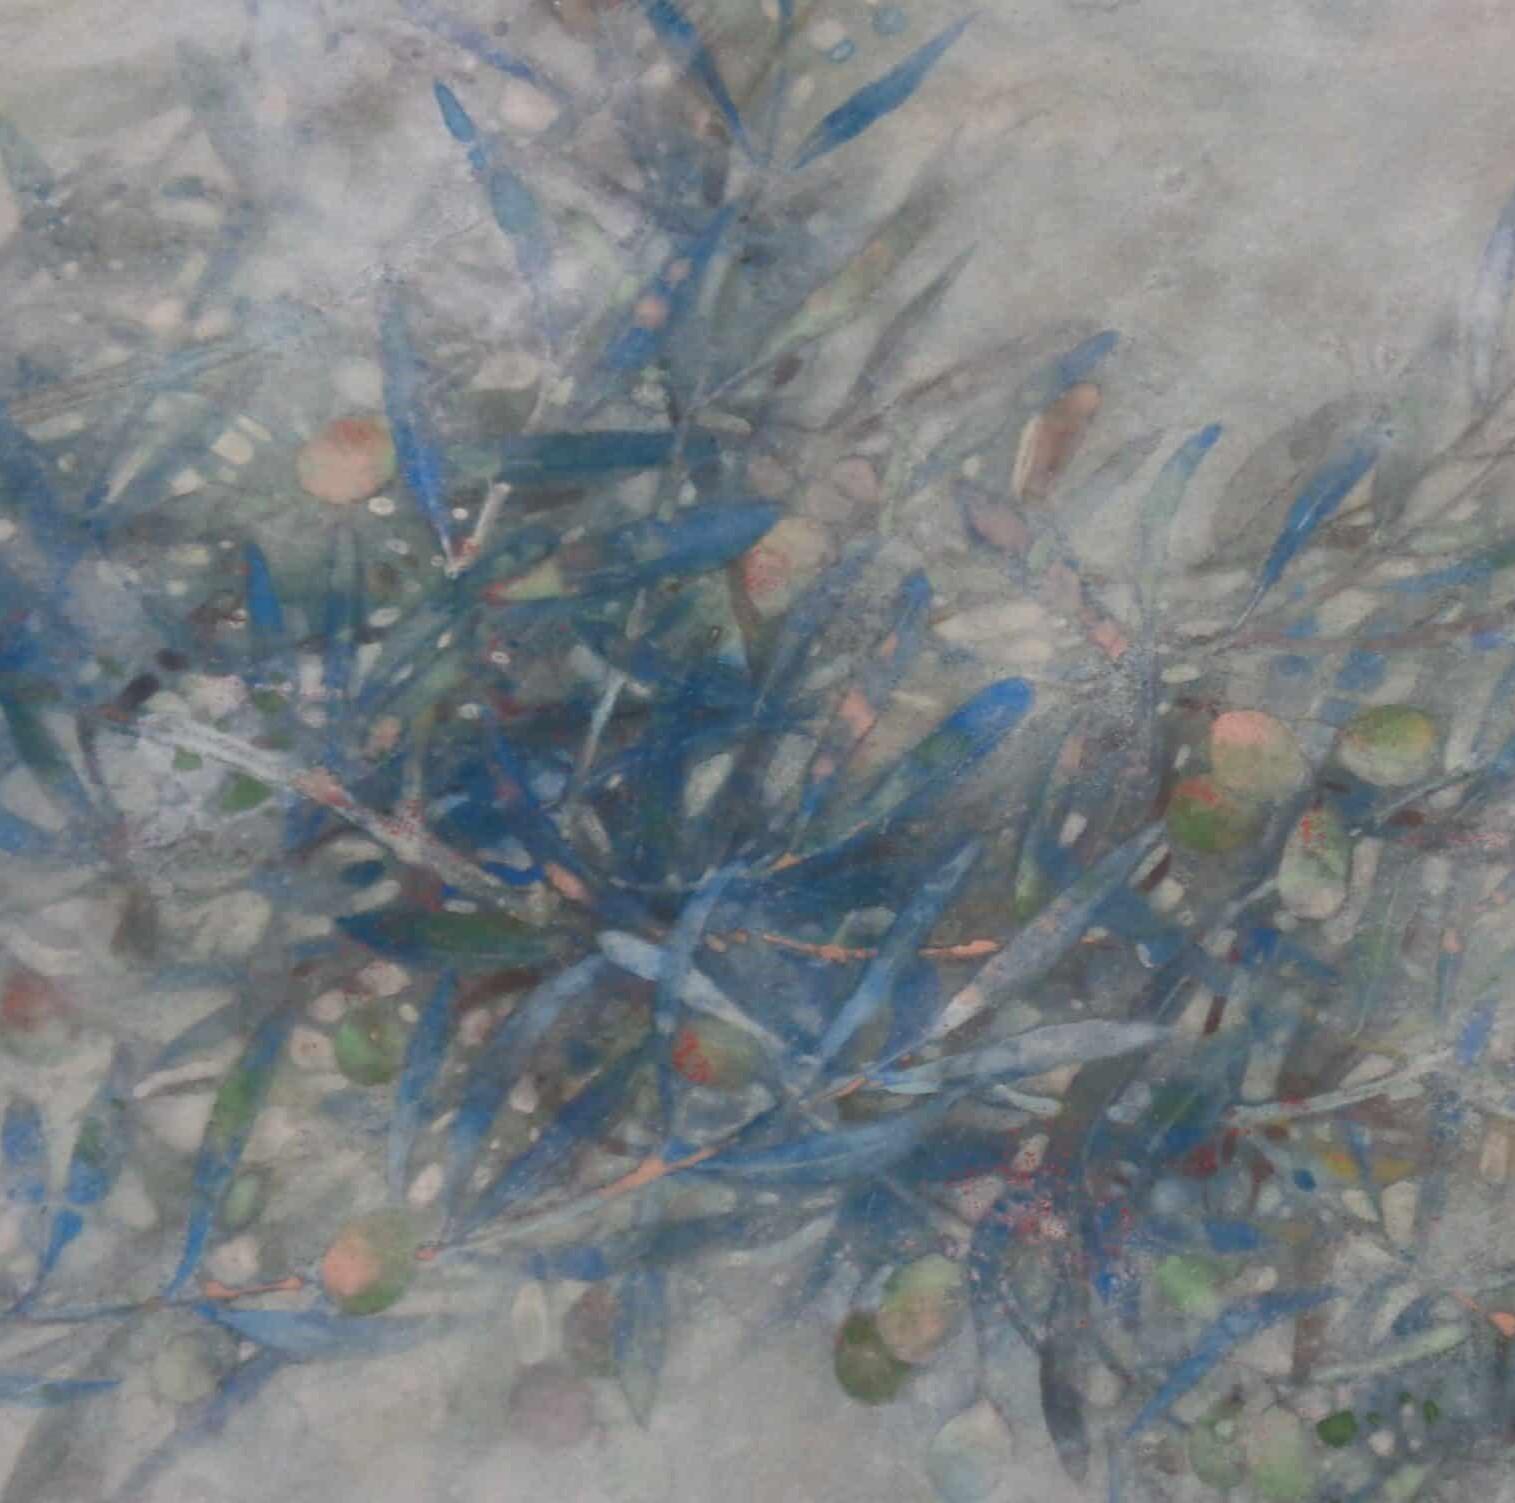 Wind II par Chen Yiching - Peinture nihonga contemporaine, couleurs douces, arbre - Contemporain Painting par Yiching Chen